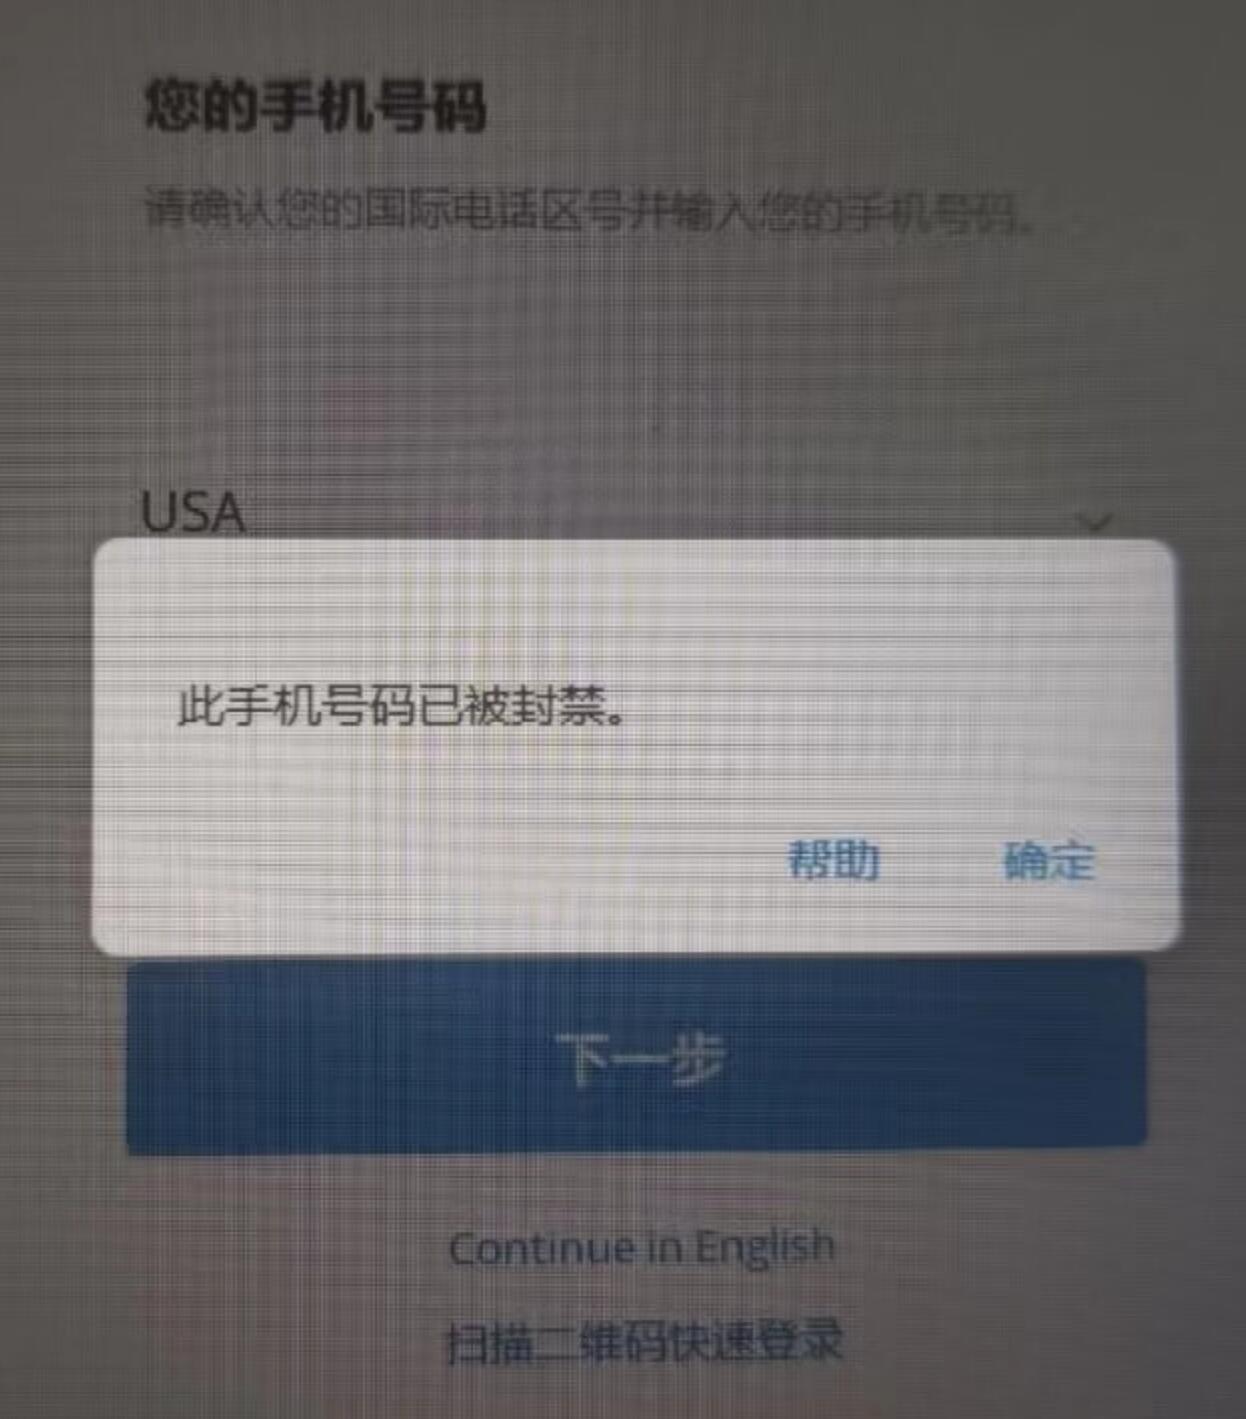 Telegram此号码已被封禁，快速解封的方法，解除this phone number is banned提醒-叼毛社区-全网免费资源基地-碉堡了论坛